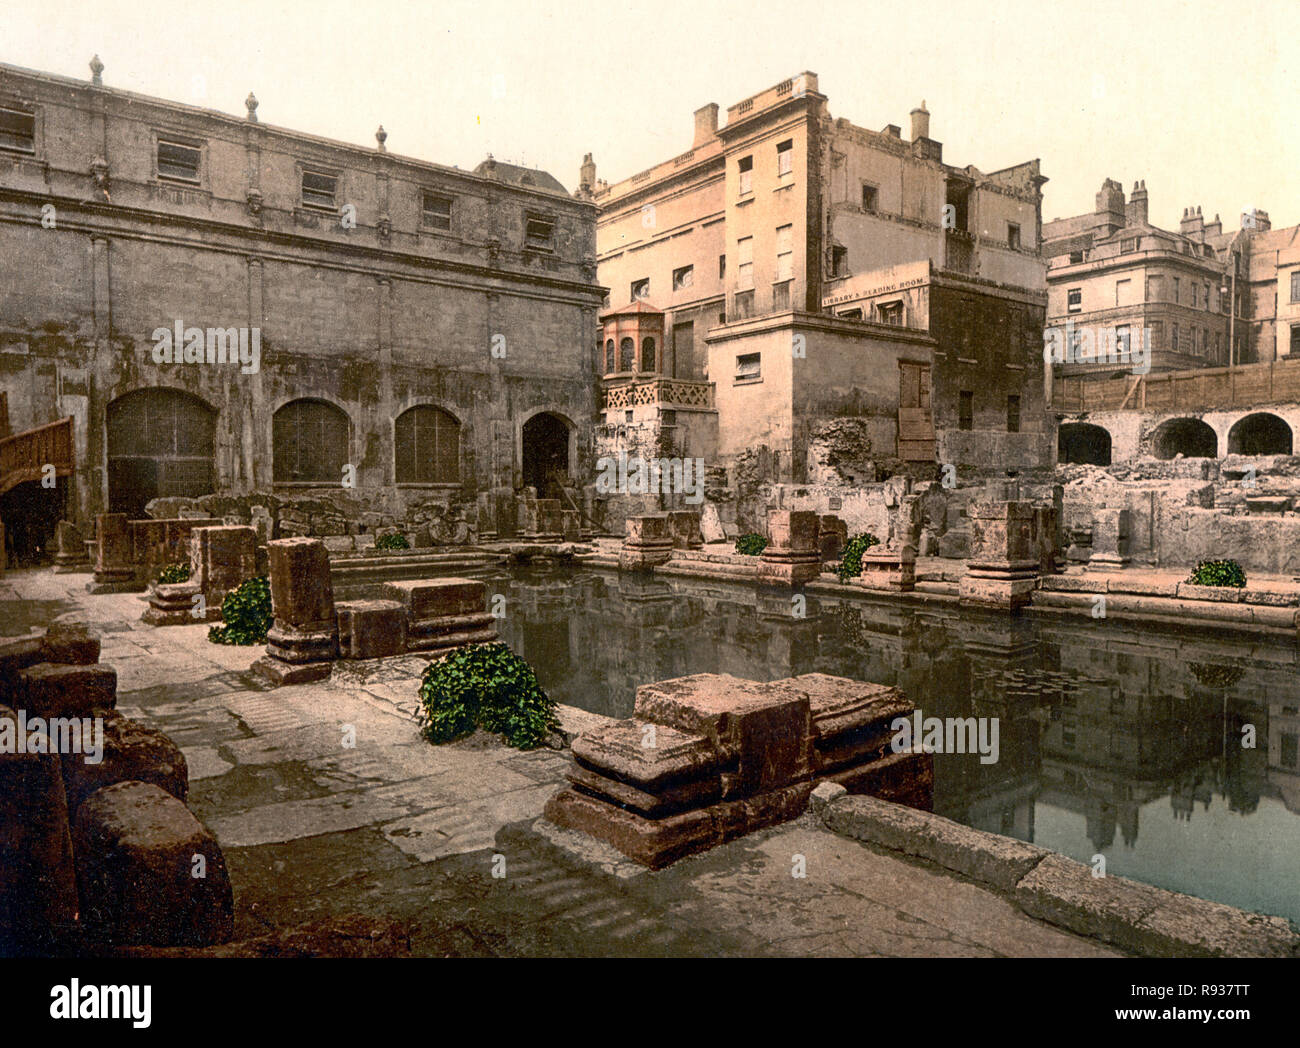 Les bains romains et l'abbaye, Bath, Angleterre, vers 1900 Banque D'Images